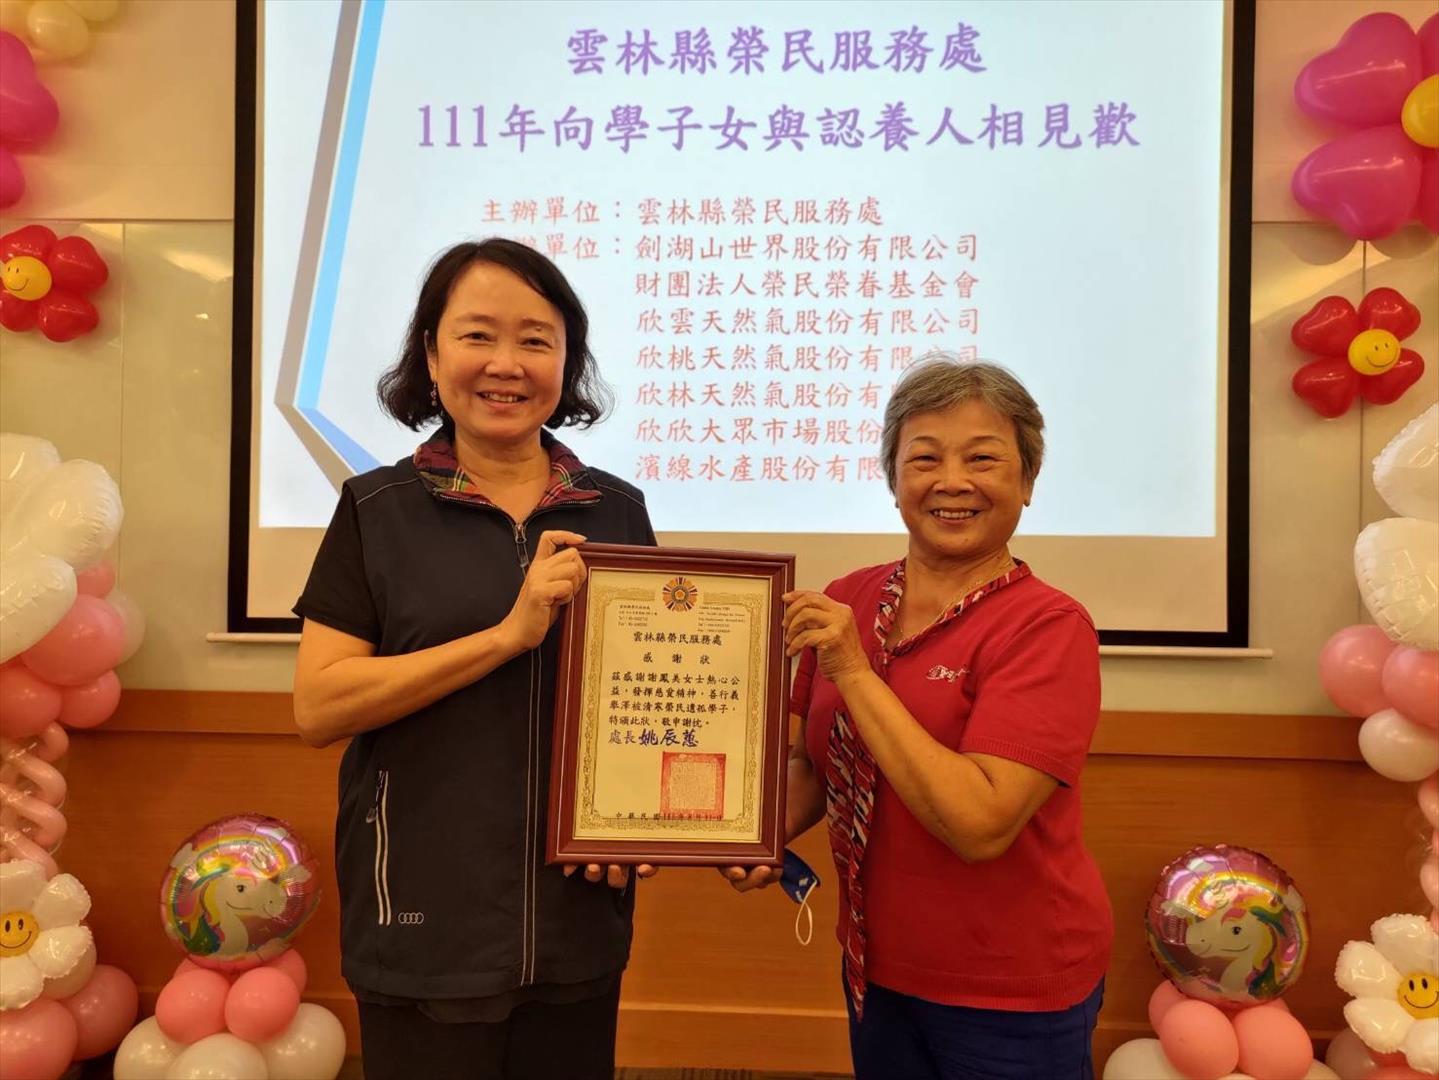 謝鳳美老師長期捐贈遺孤認養金，姚辰蕙處長111年度頒贈感謝狀。